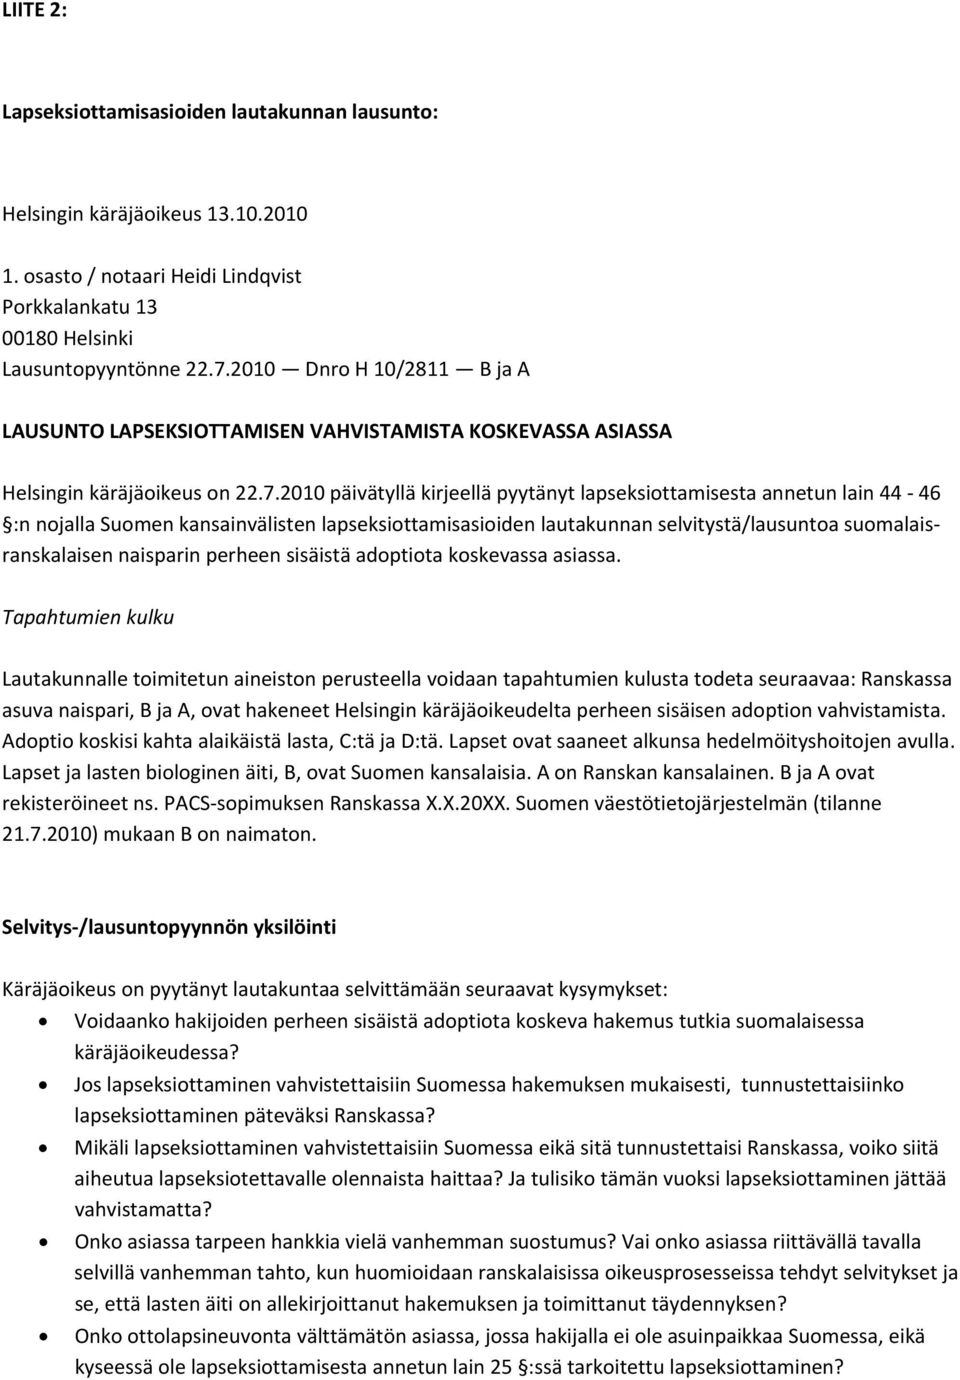 2010 päivätyllä kirjeellä pyytänyt lapseksiottamisesta annetun lain 44 46 :n nojalla Suomen kansainvälisten lapseksiottamisasioiden lautakunnan selvitystä/lausuntoa suomalaisranskalaisen naisparin